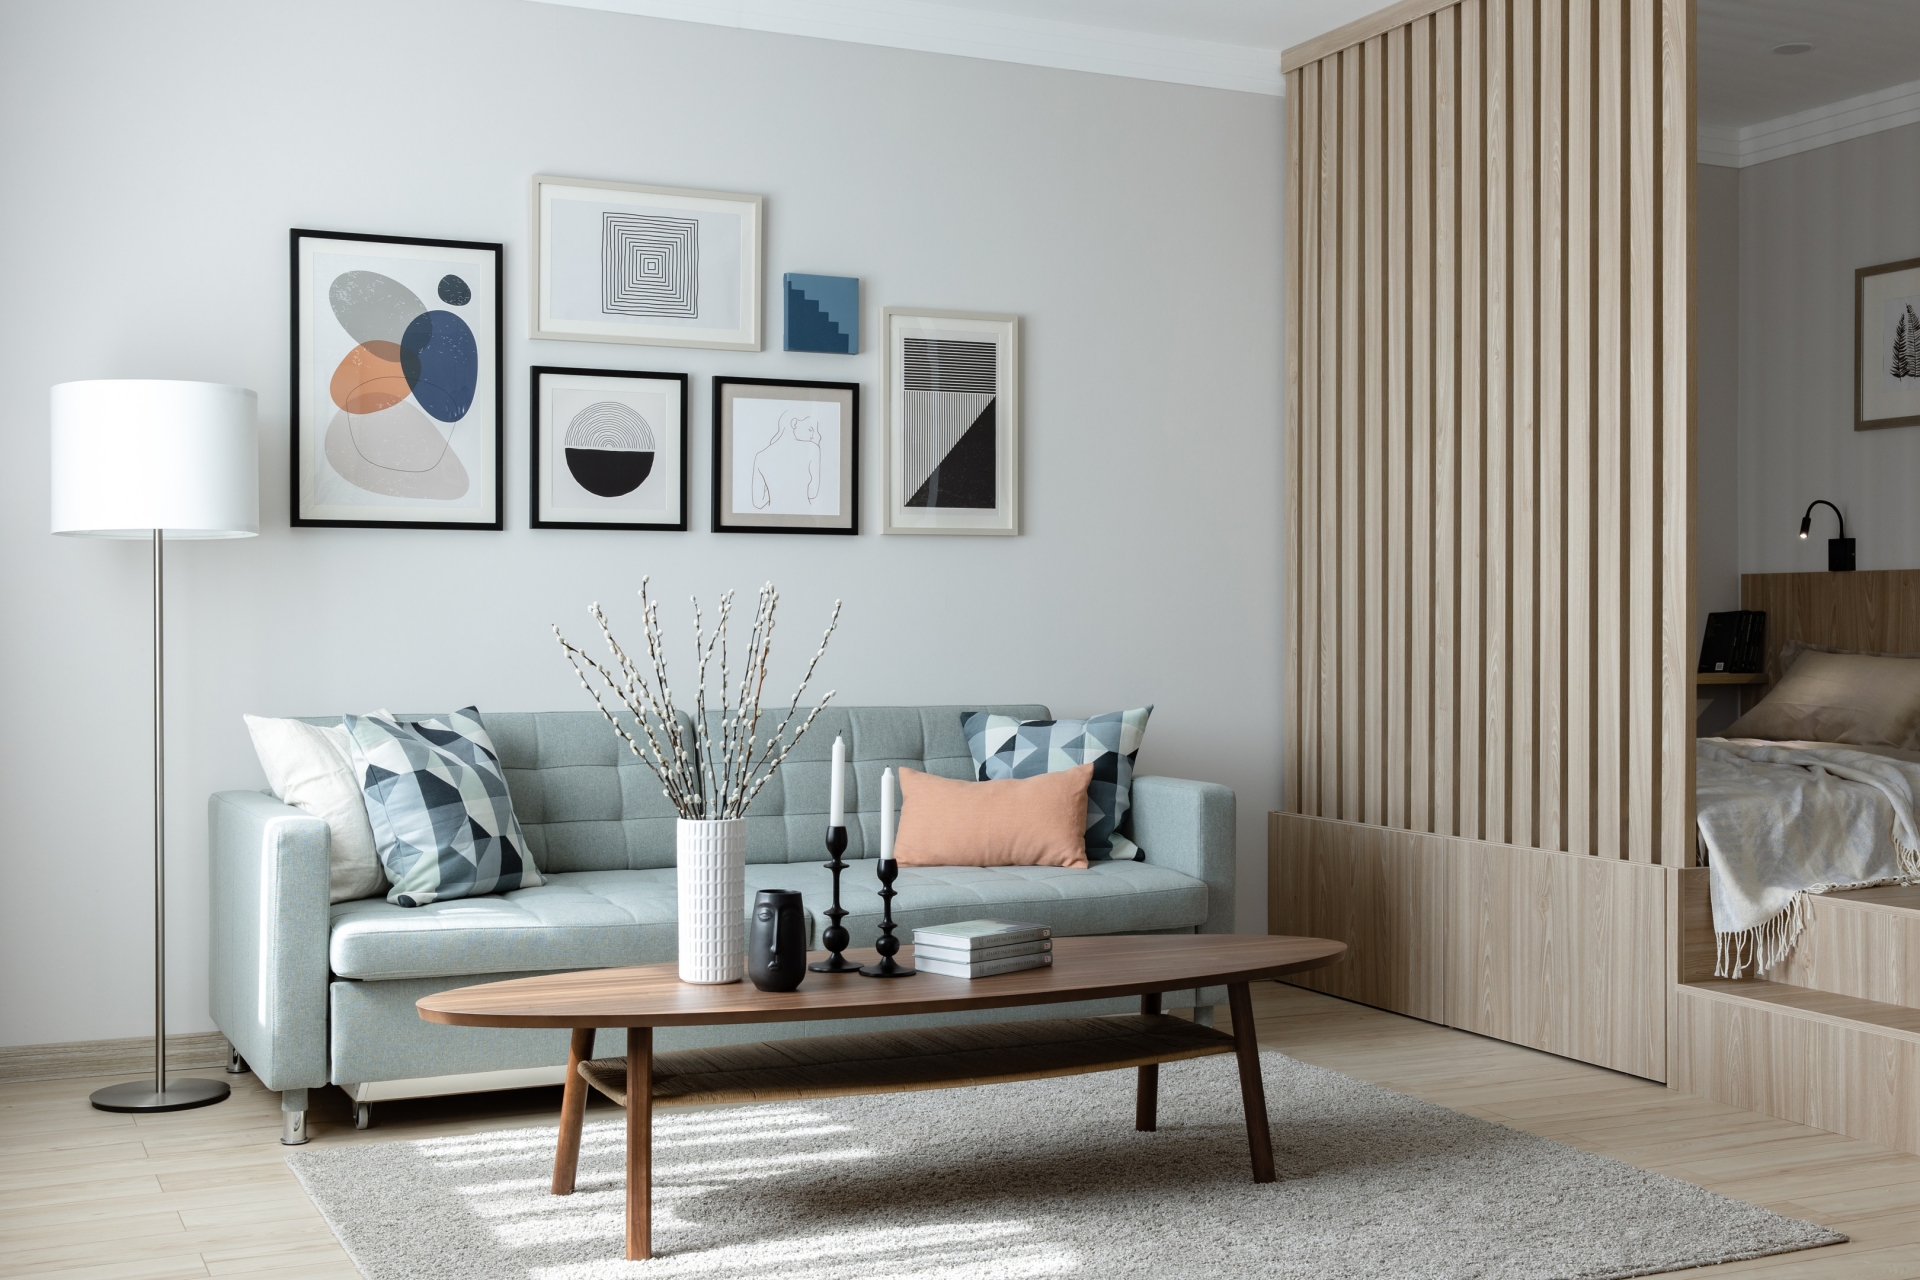 Phòng khách thiết kế đúng chuẩn phong cách Scandinavian thanh lịch với nội thất thiết kế đơn giản, gọn gàng nhưng tinh tế. Chiếc ghế sofa màu xanh bạc hà kết hợp với bàn nước bằng gỗ hình bầu dục nổi bật trên thảm trải sàn mịn mượt.